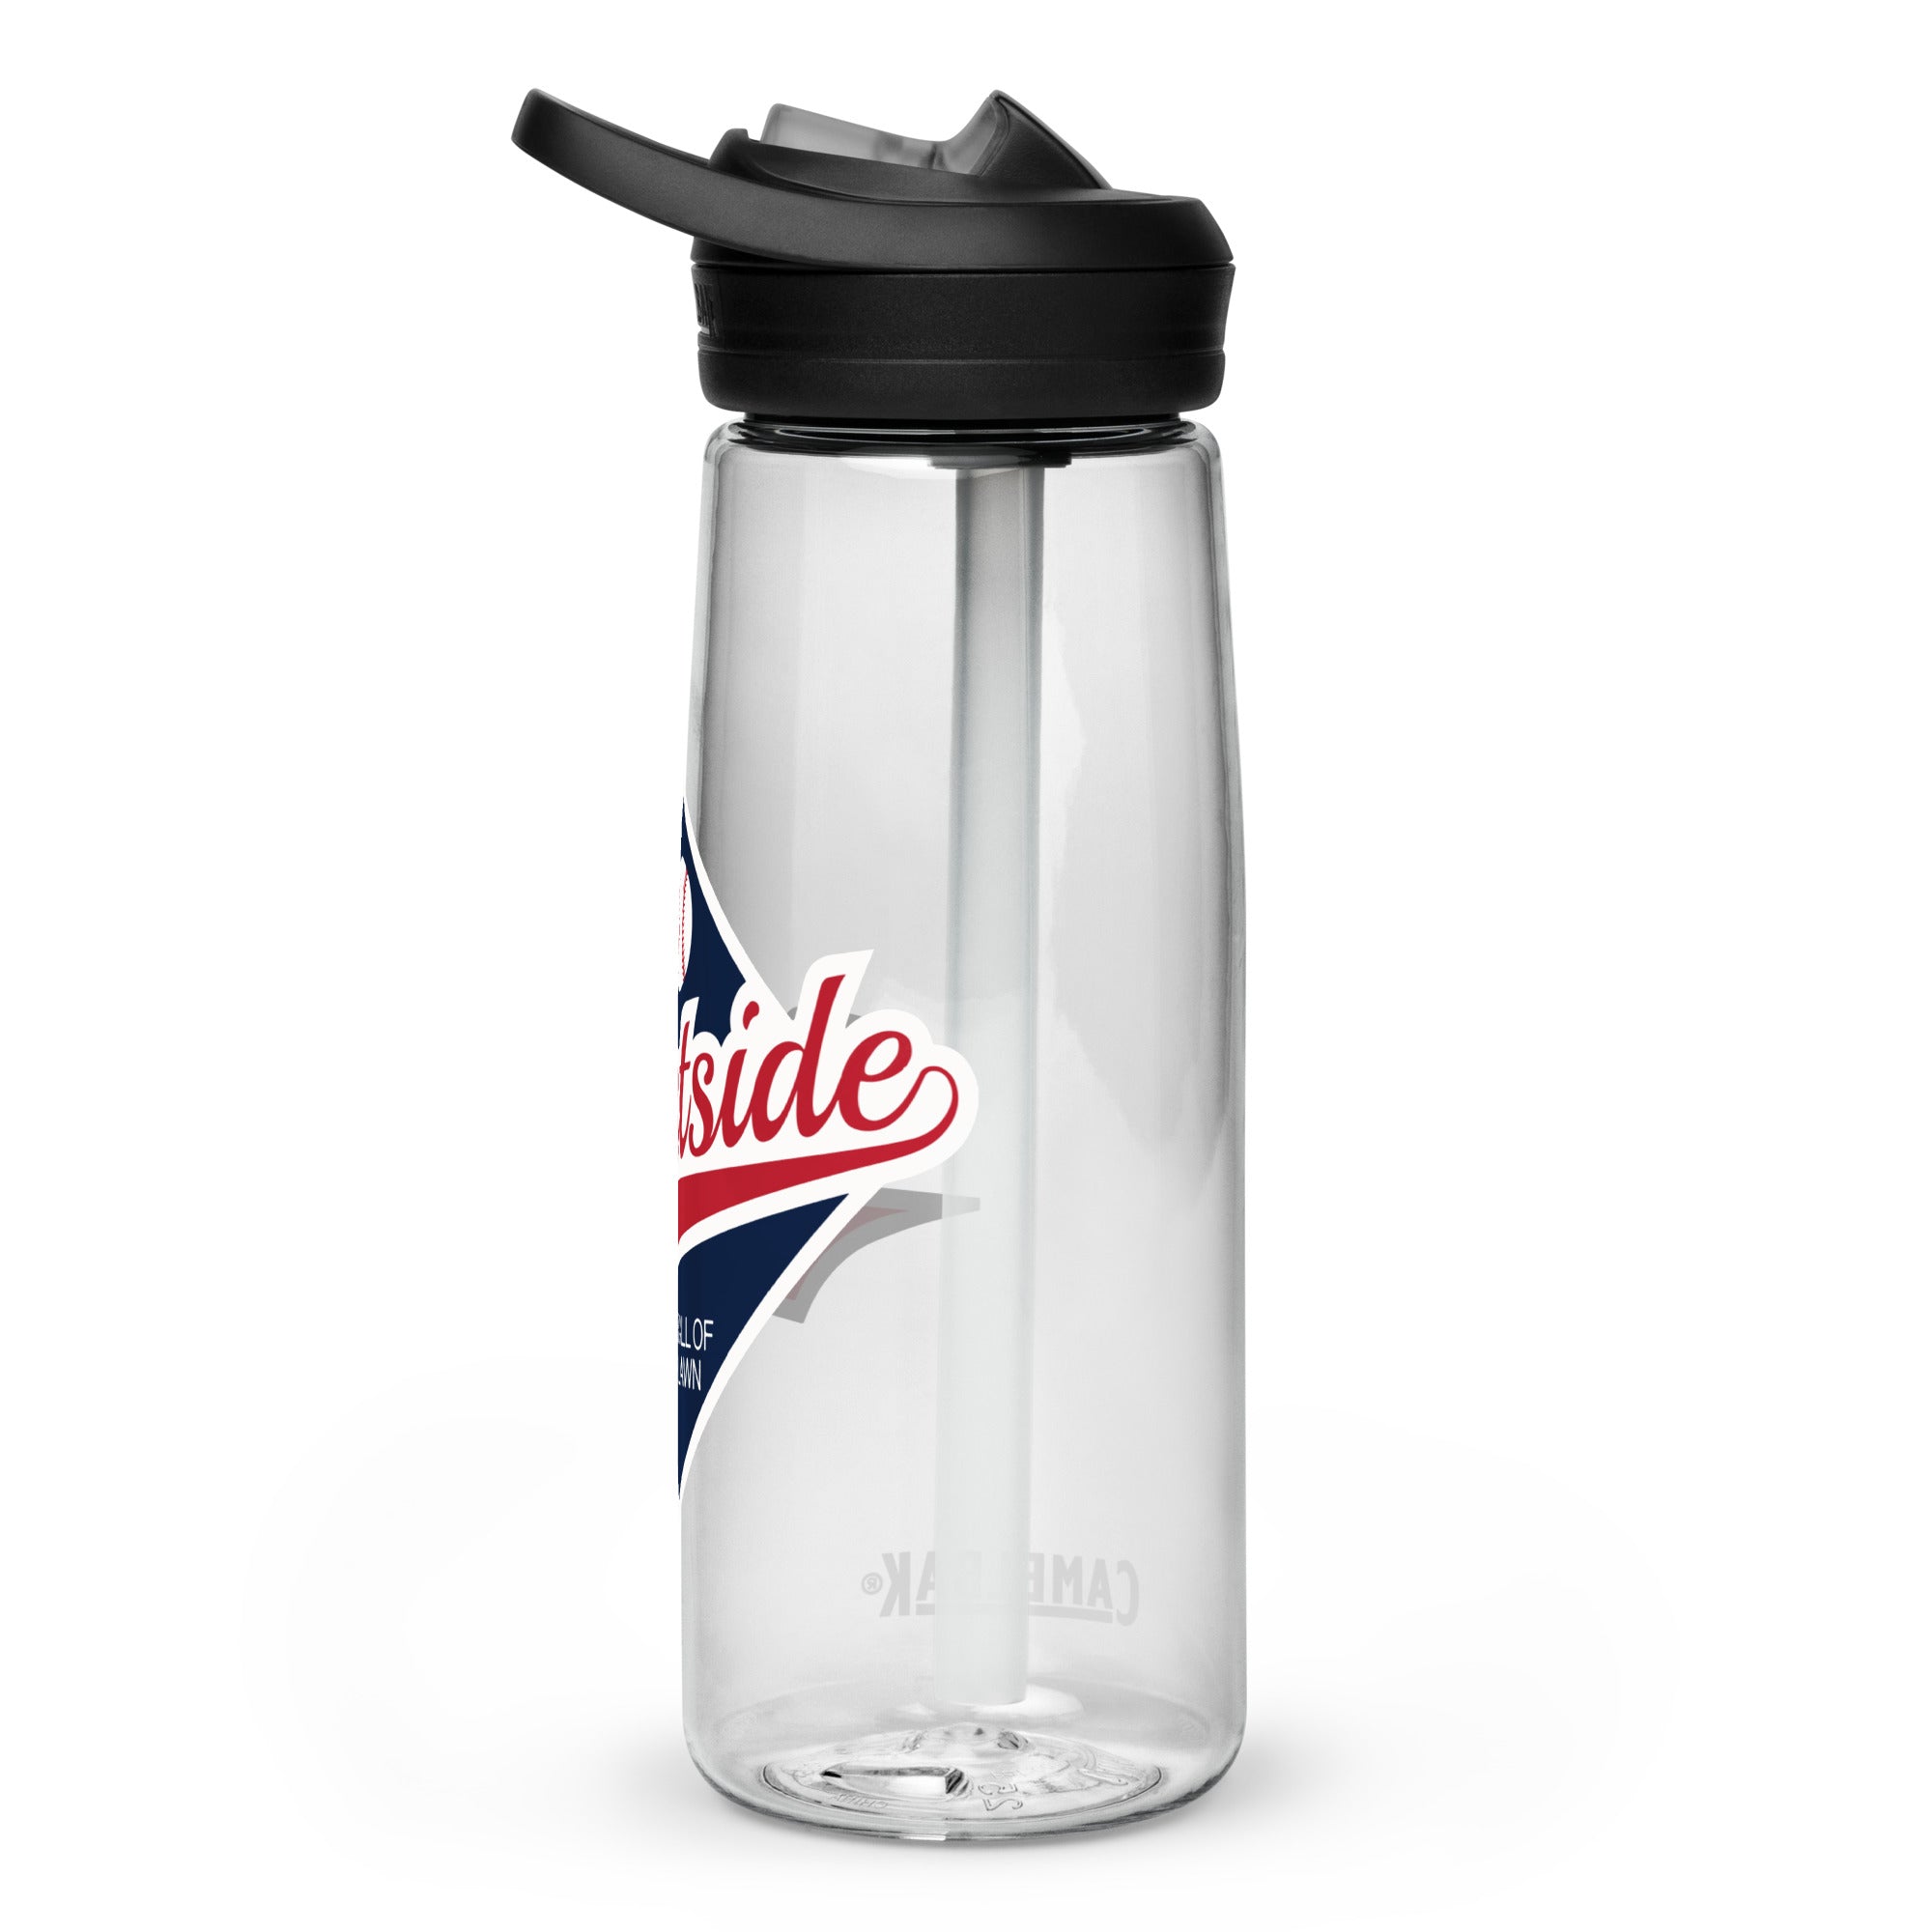 WBOL Sports water bottle